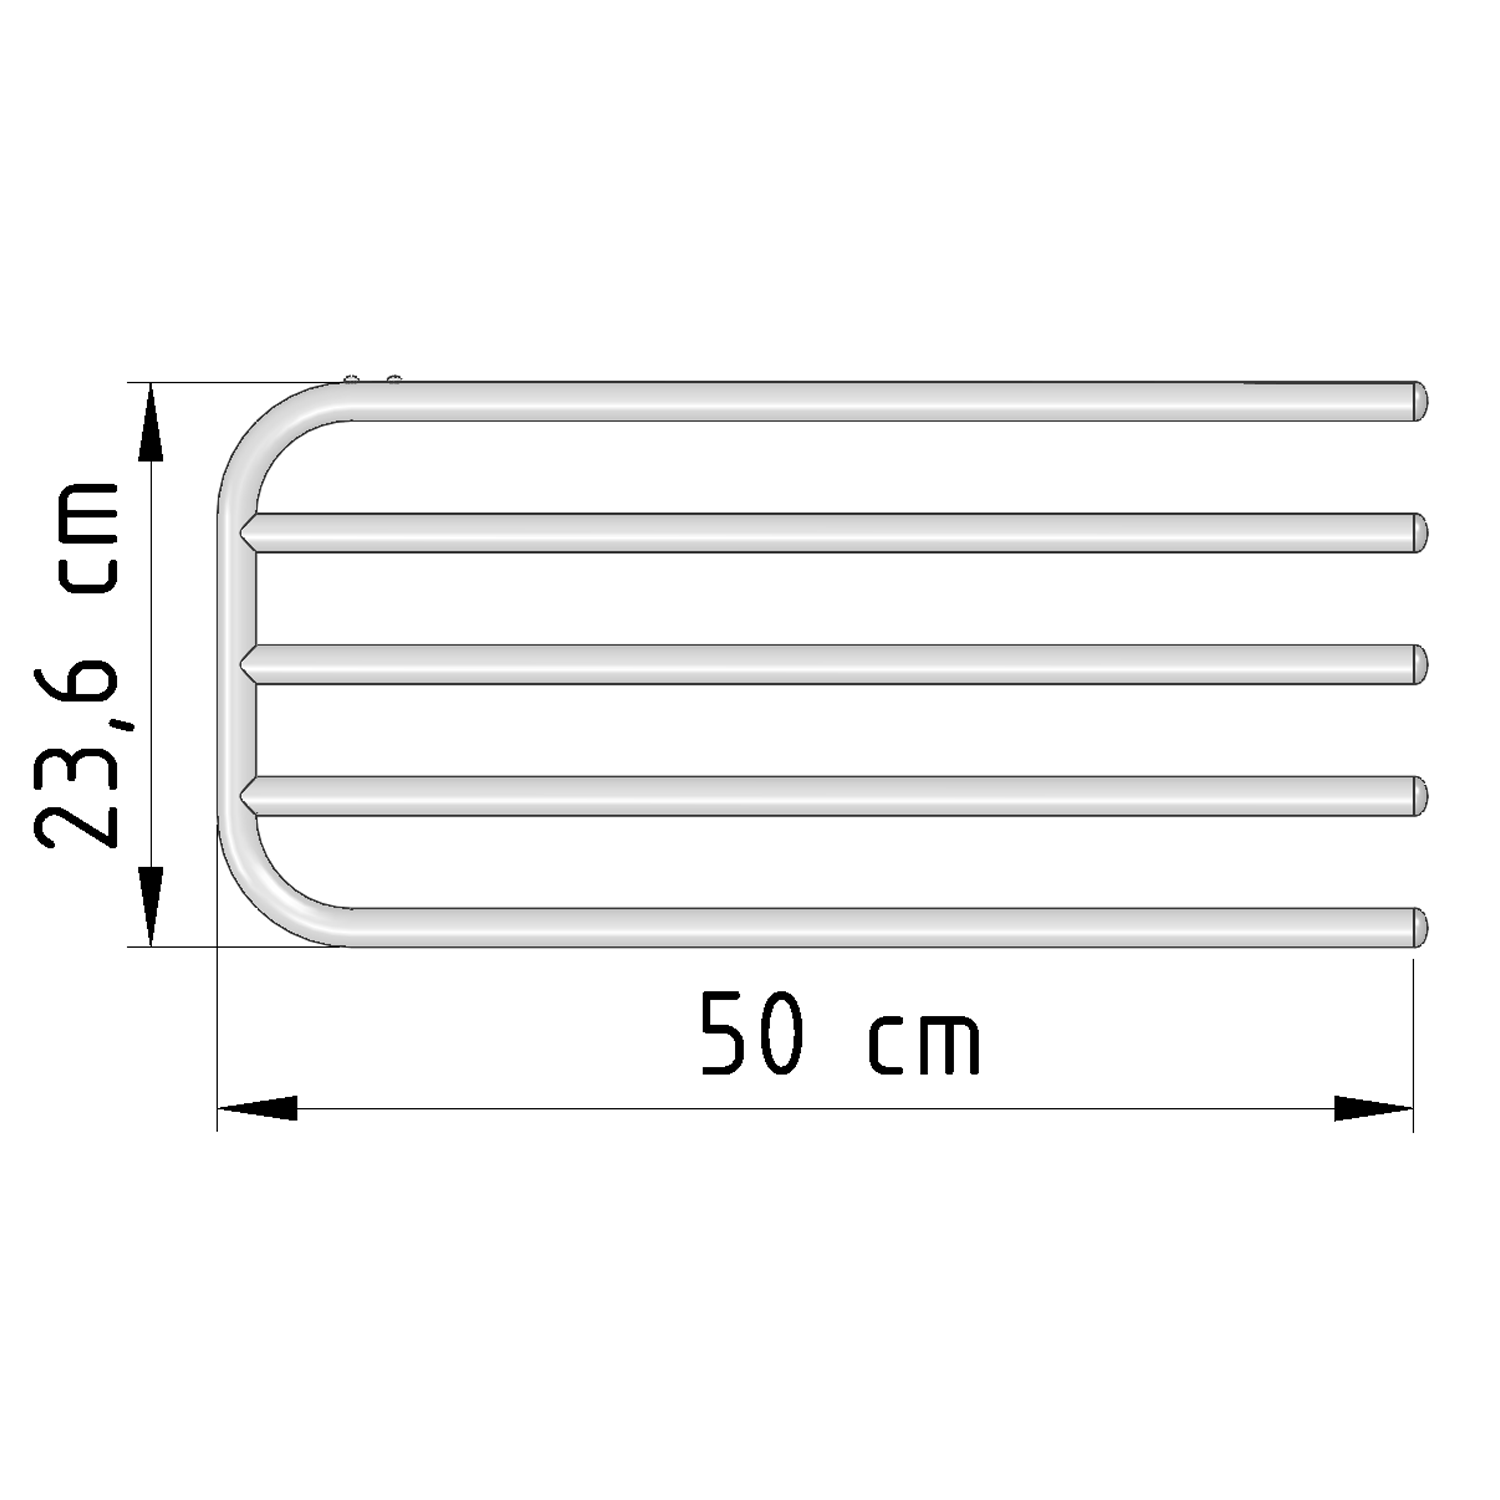 Handtuchtrockner 4-Fach für Heizkörper, Universalklemmung, Länge 50cm, weiß